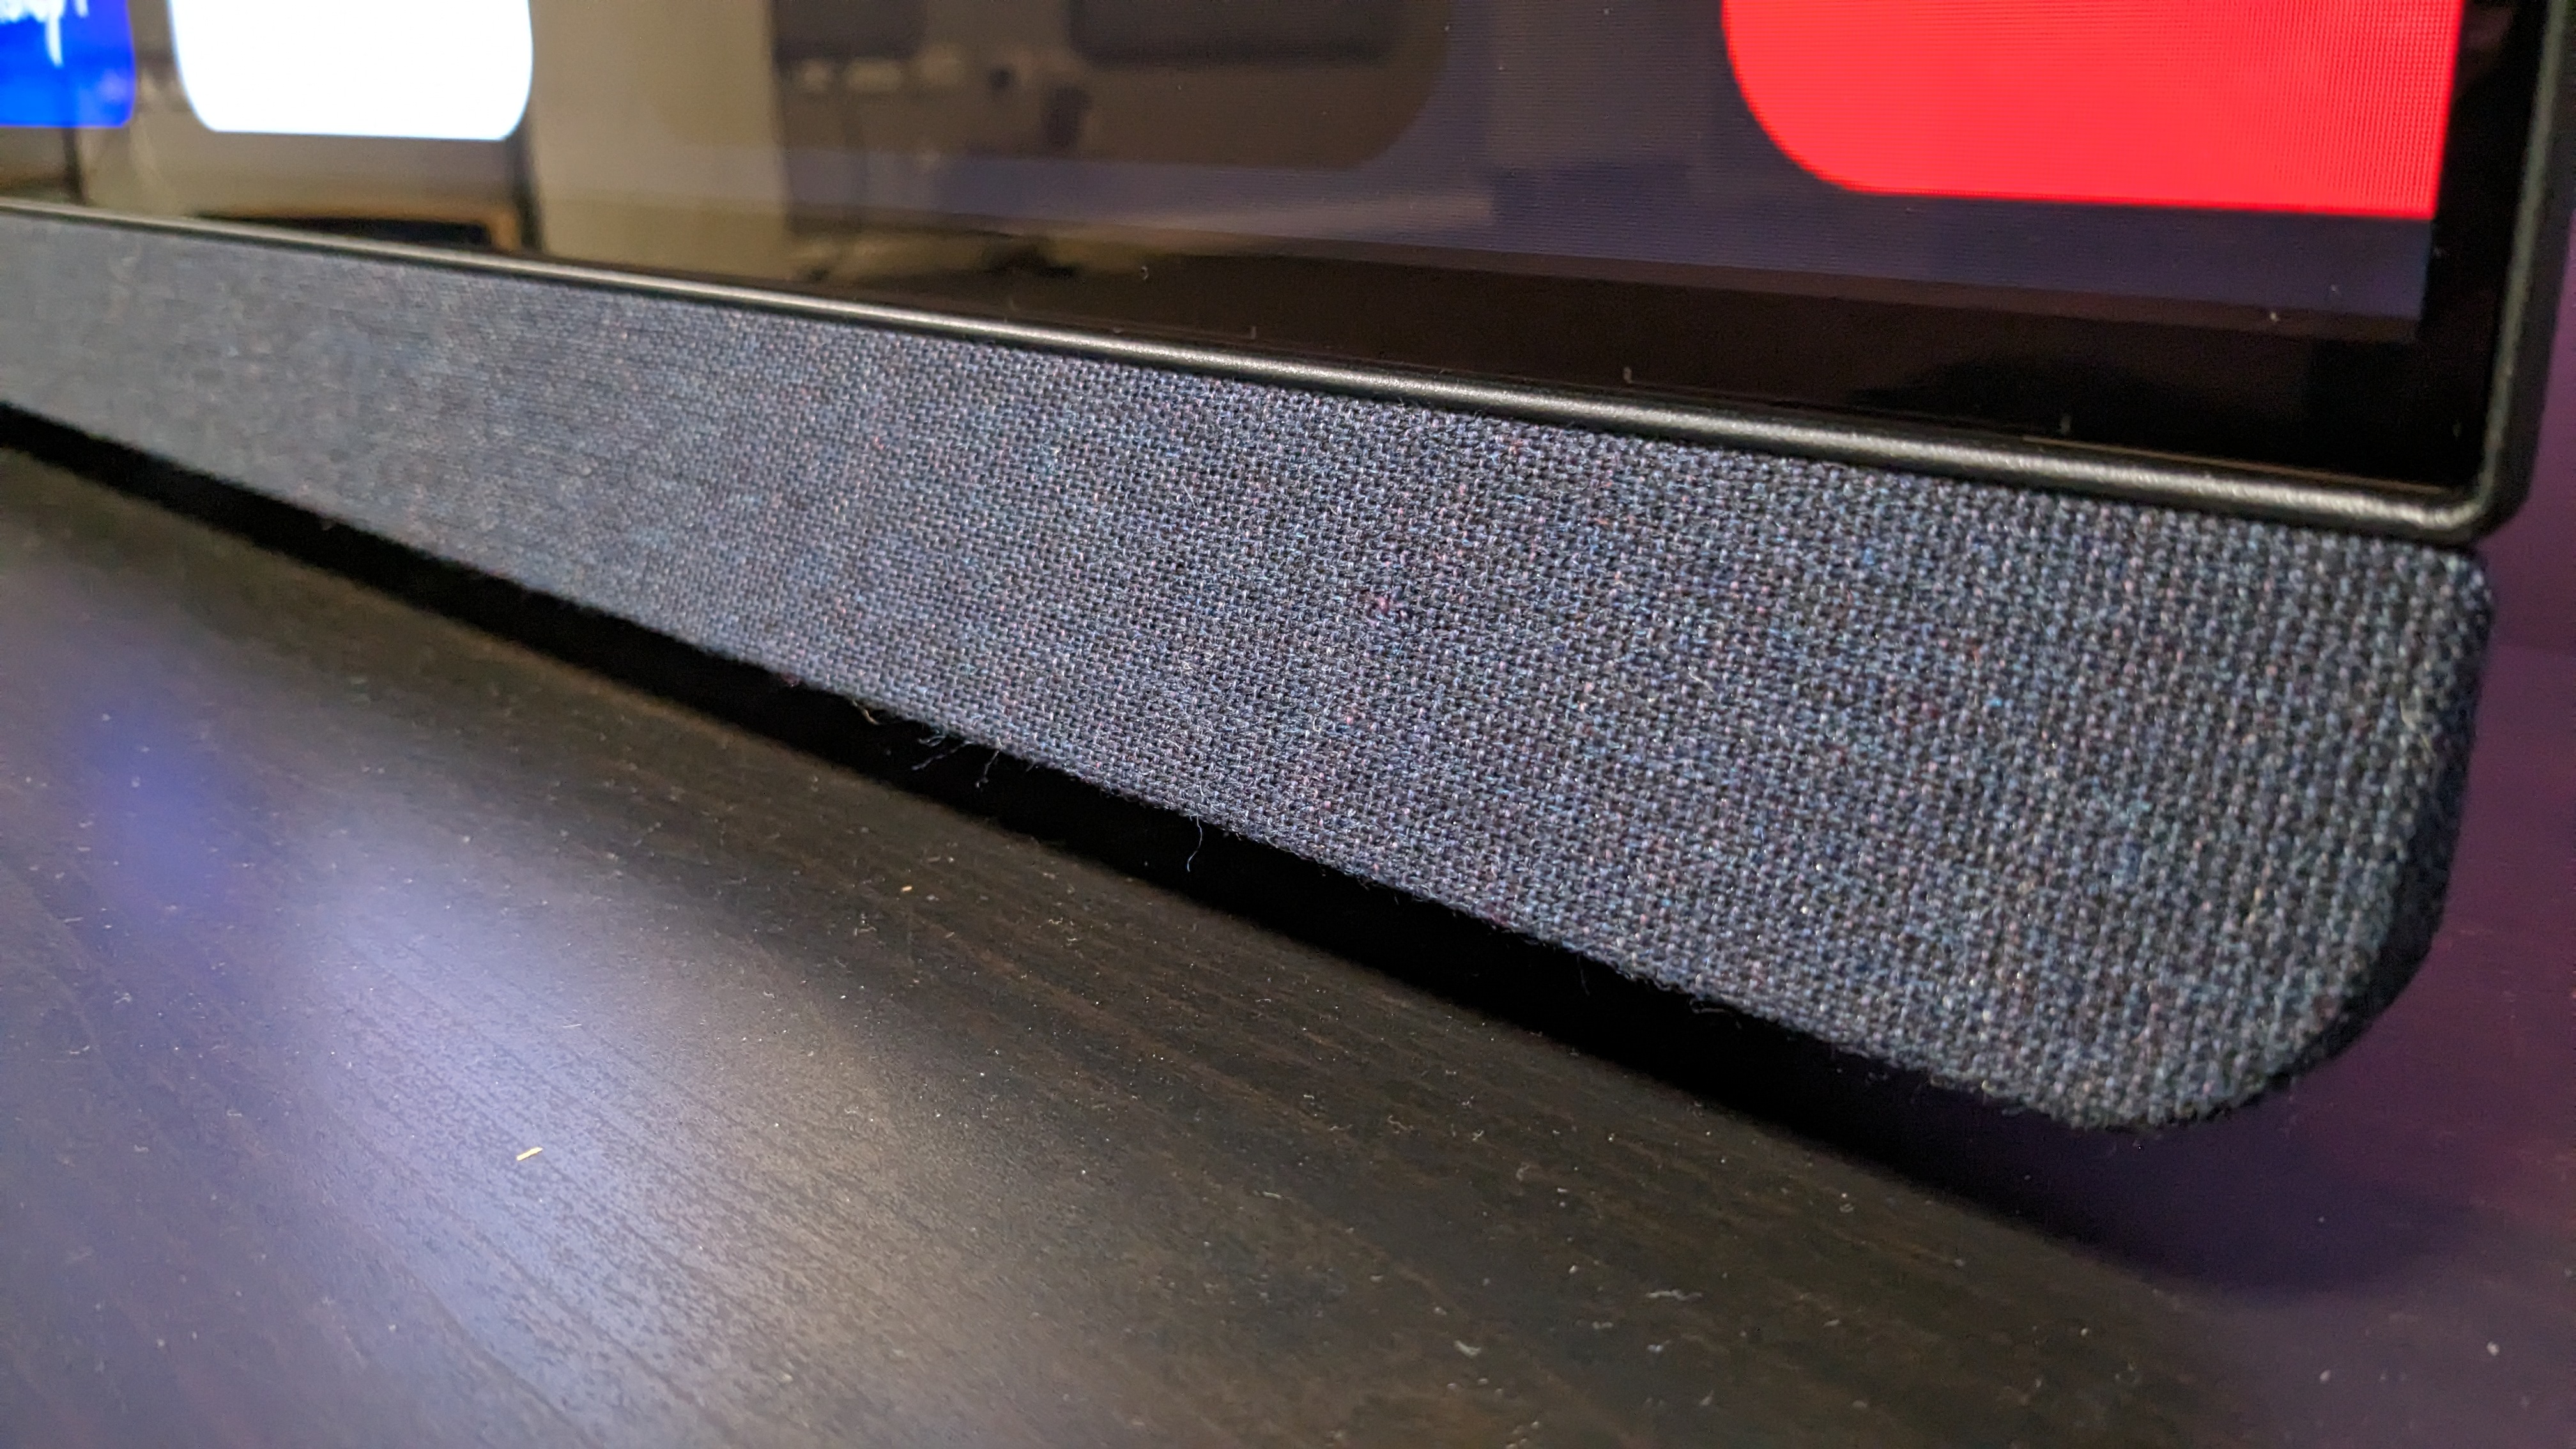 Philips OLED908 external speaker on bottom of TV